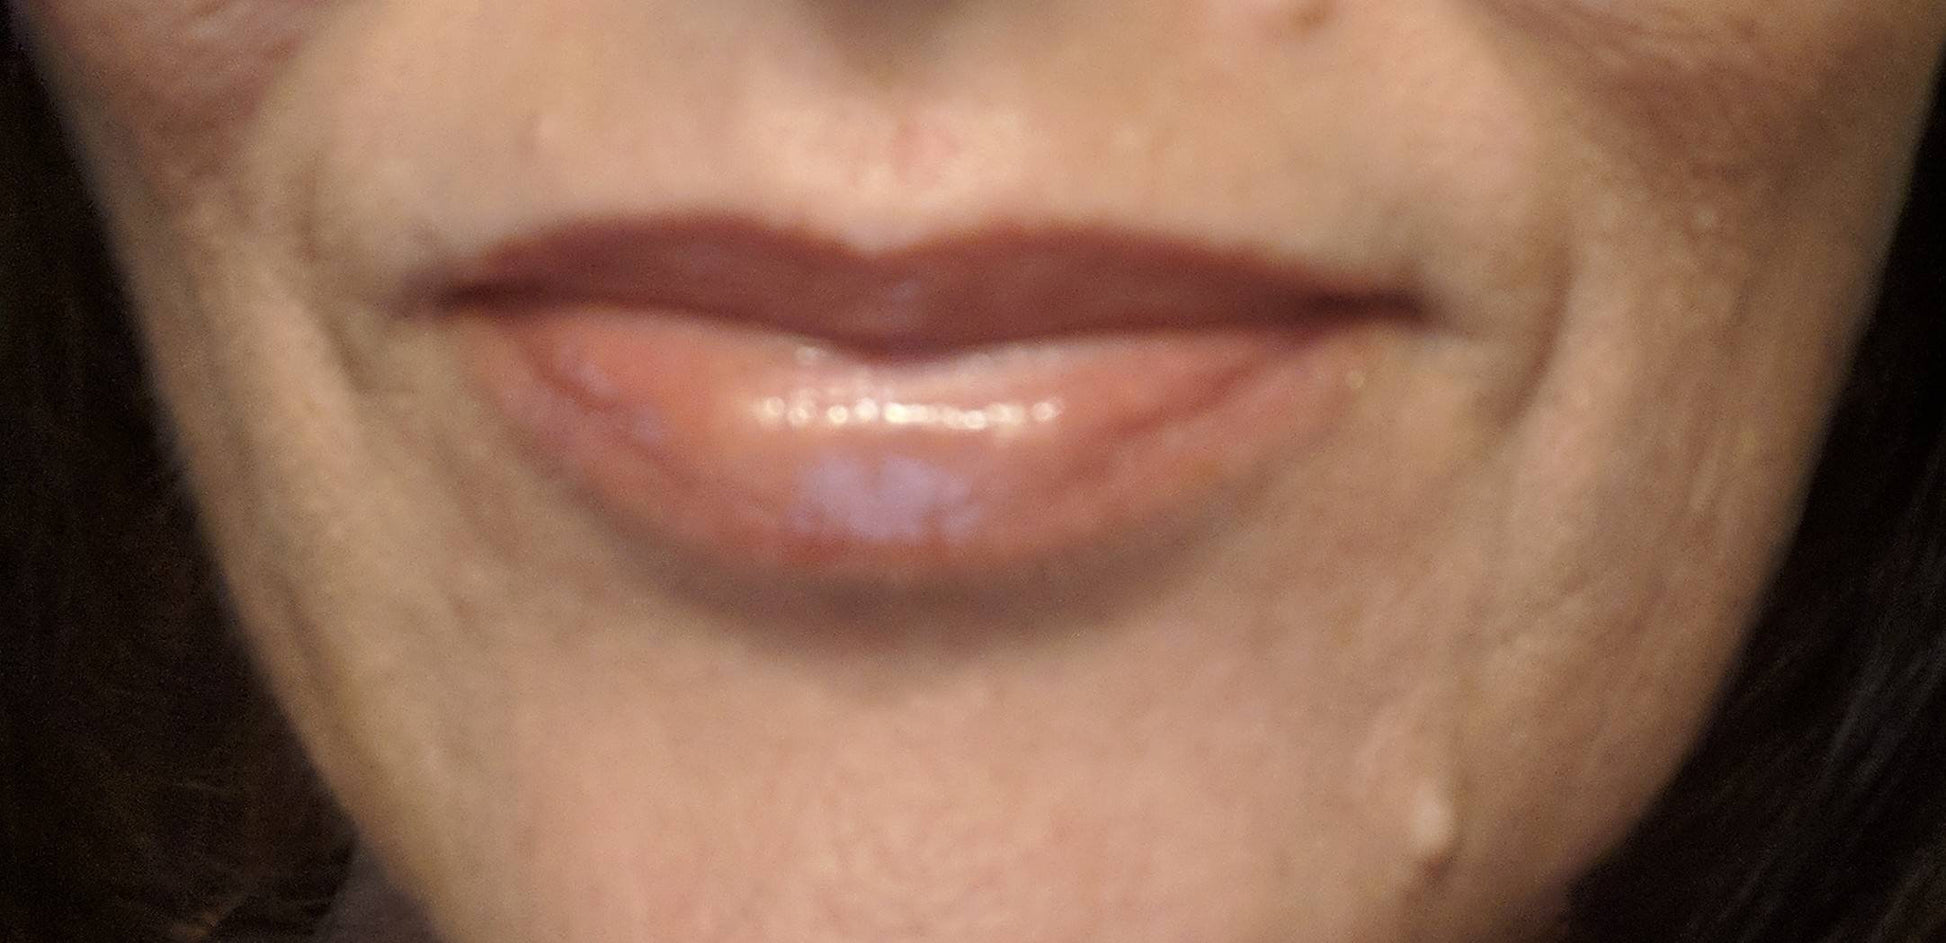 Shimmering Beige Lip Gloss - Hanna Herbals